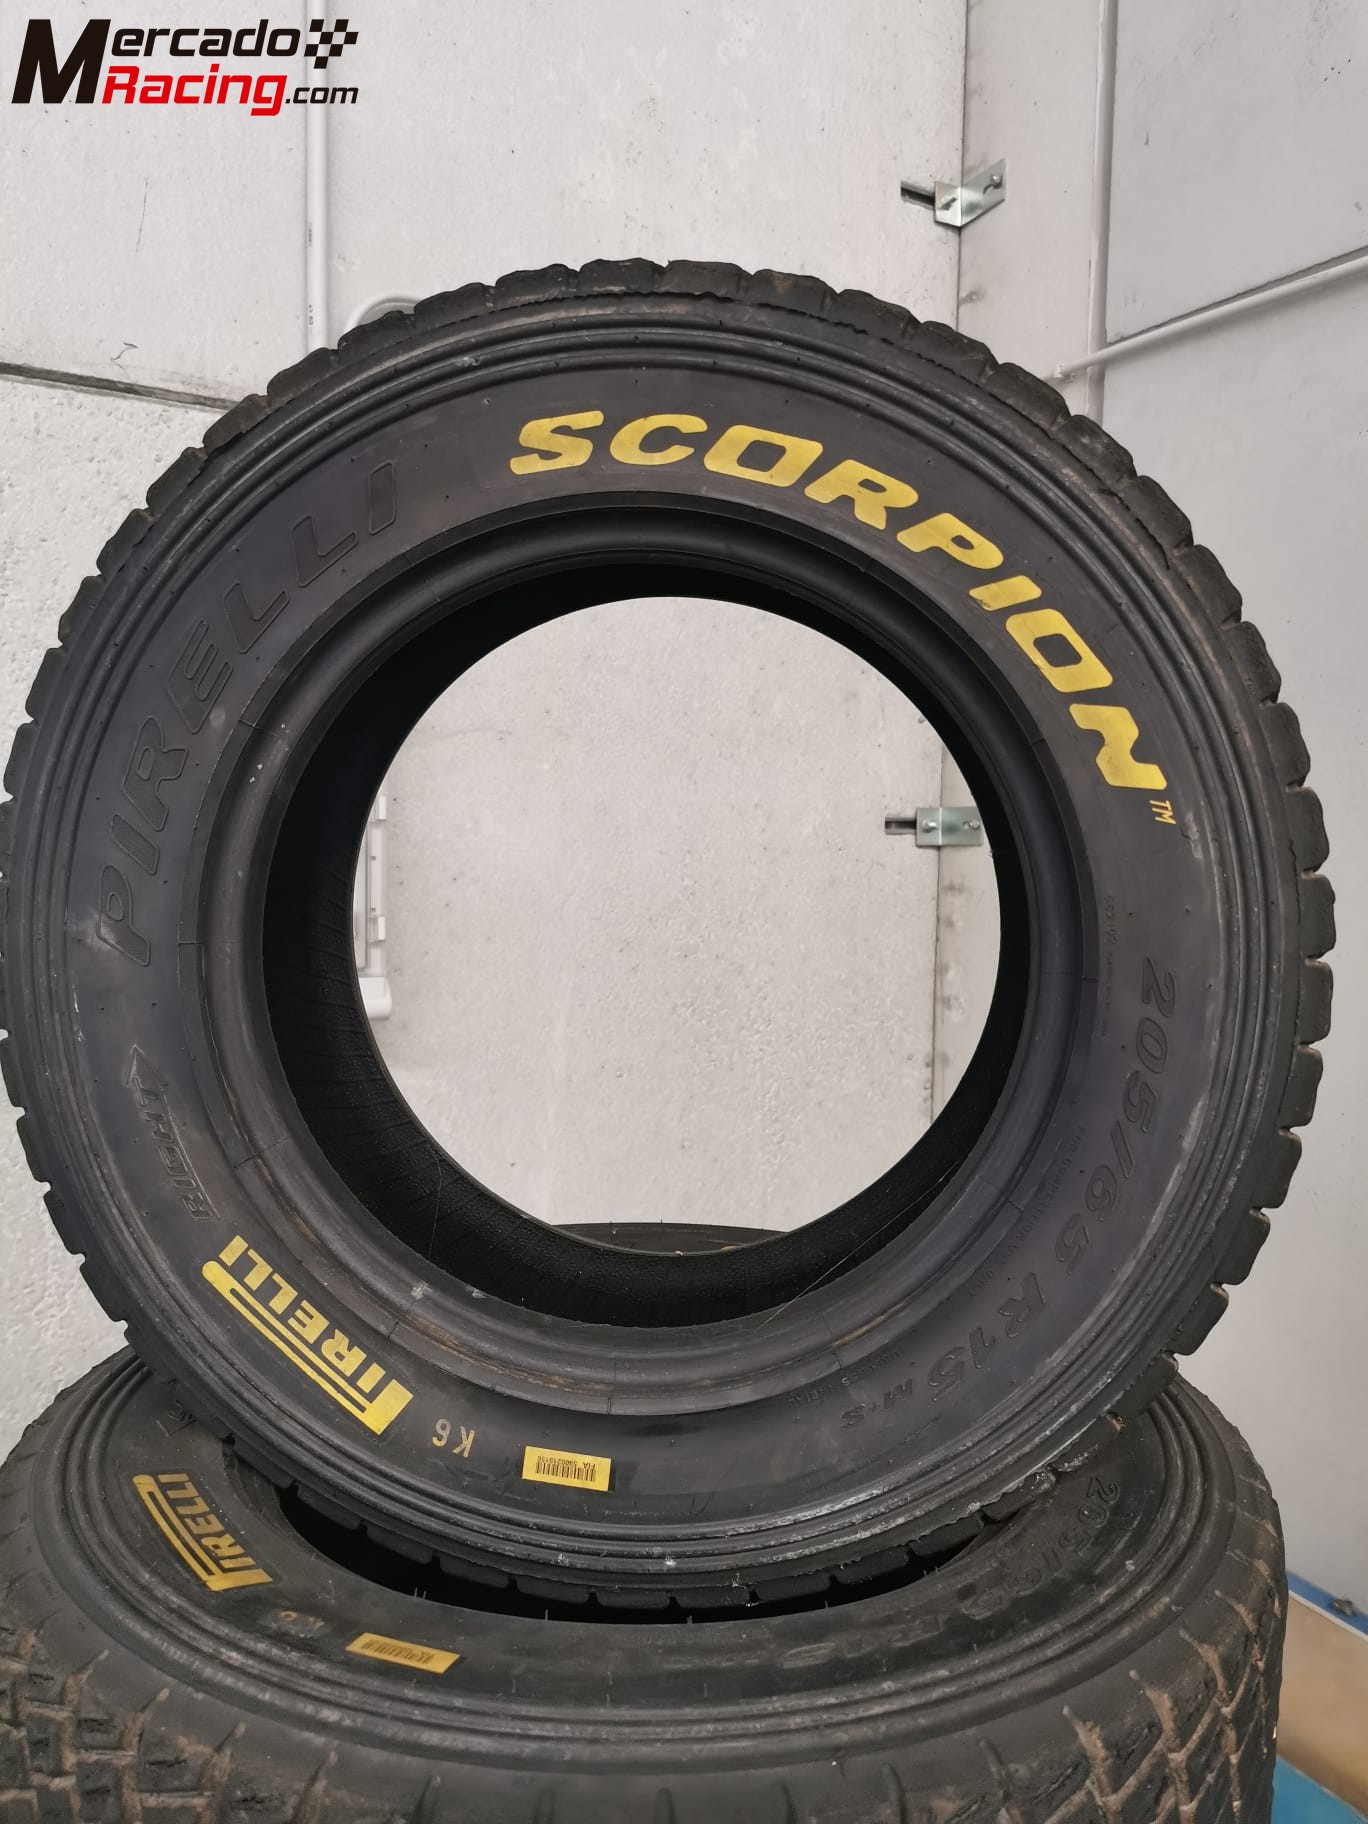 Neumáticos pirelli scorpion 15